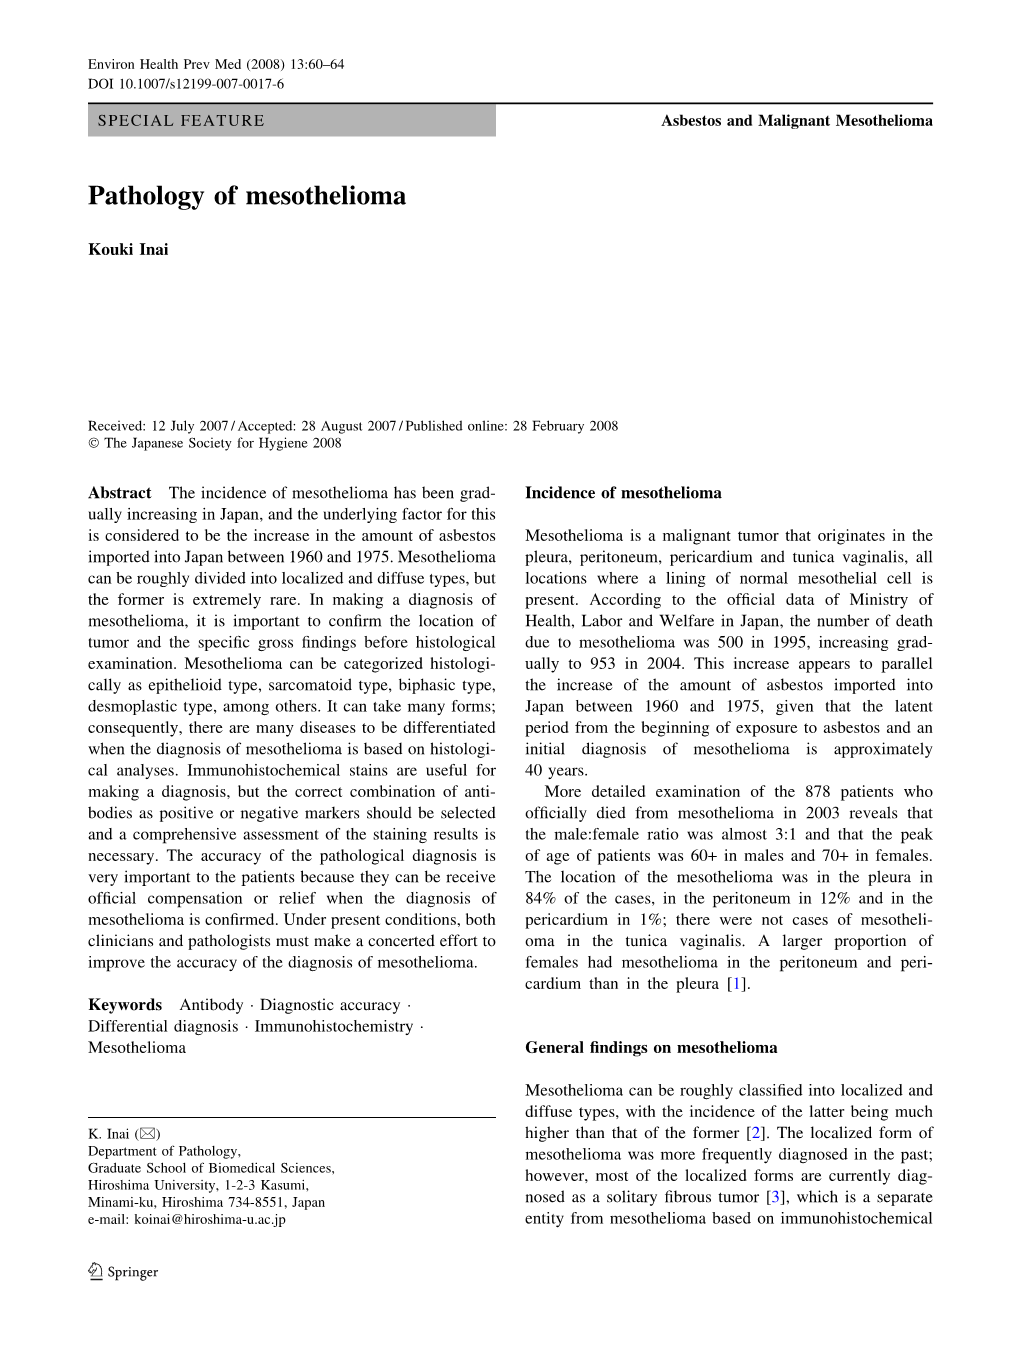 Pathology of Mesothelioma